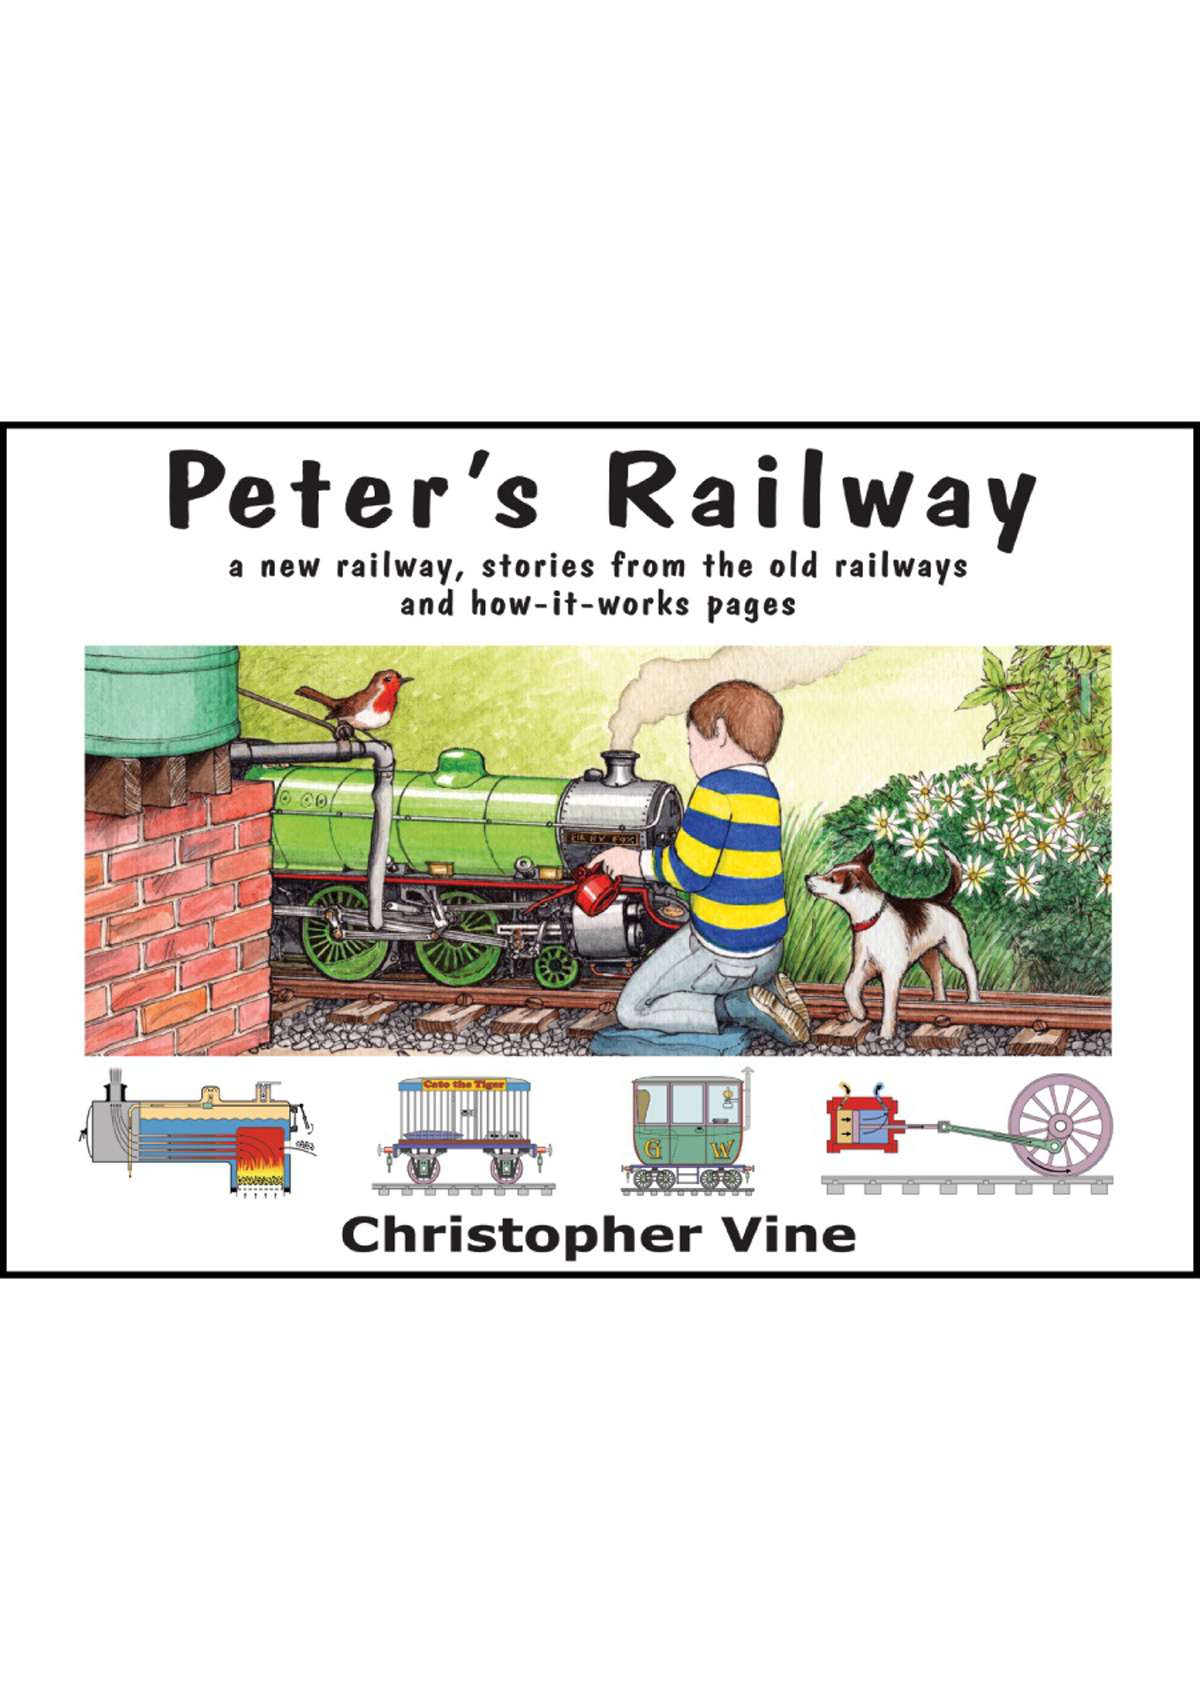 Book - Peter's Railway
